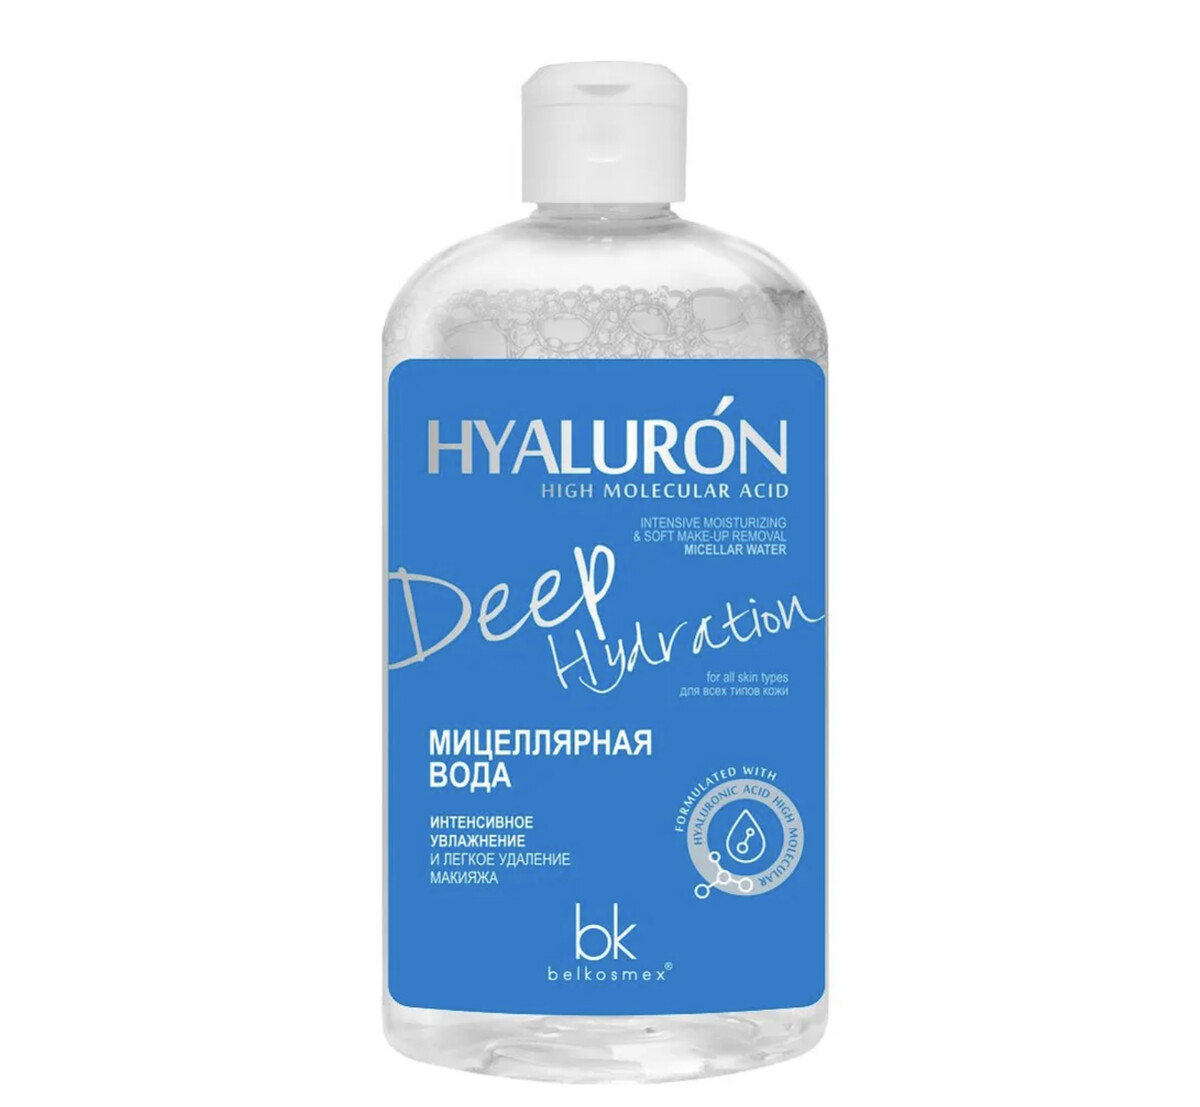 Hialuron deep hydration мицеллярная вода интенсивное увлажнение 500г